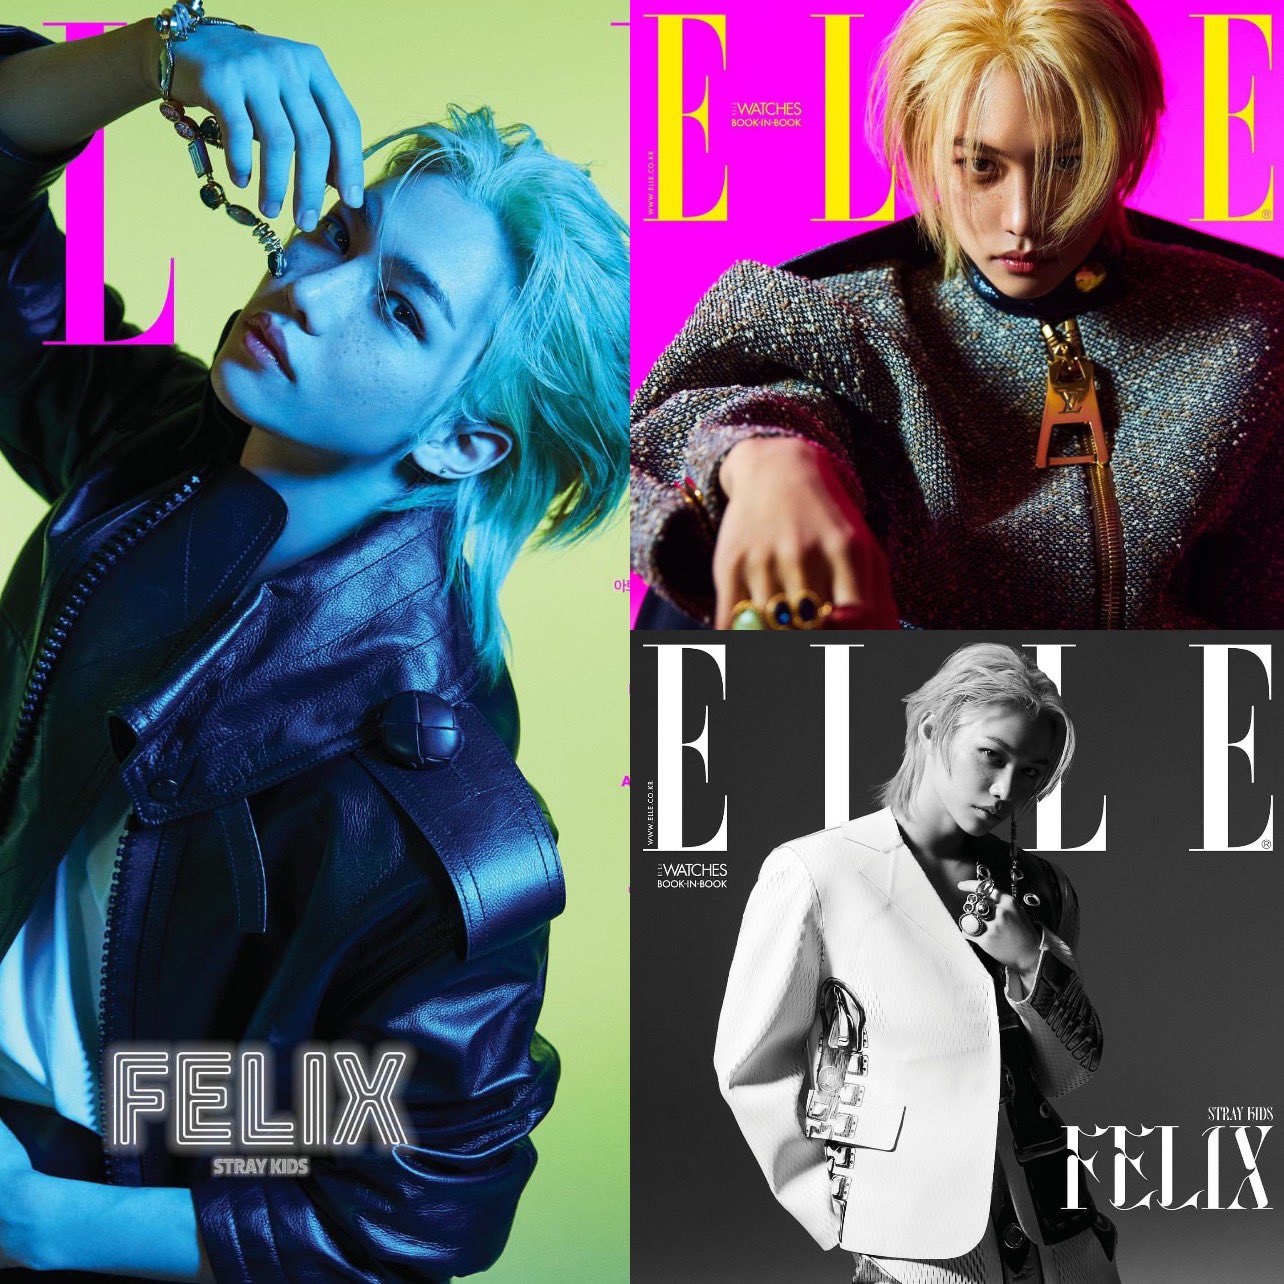 Felix of Stray Kids Covers Elle Korea in Louis Vuitton